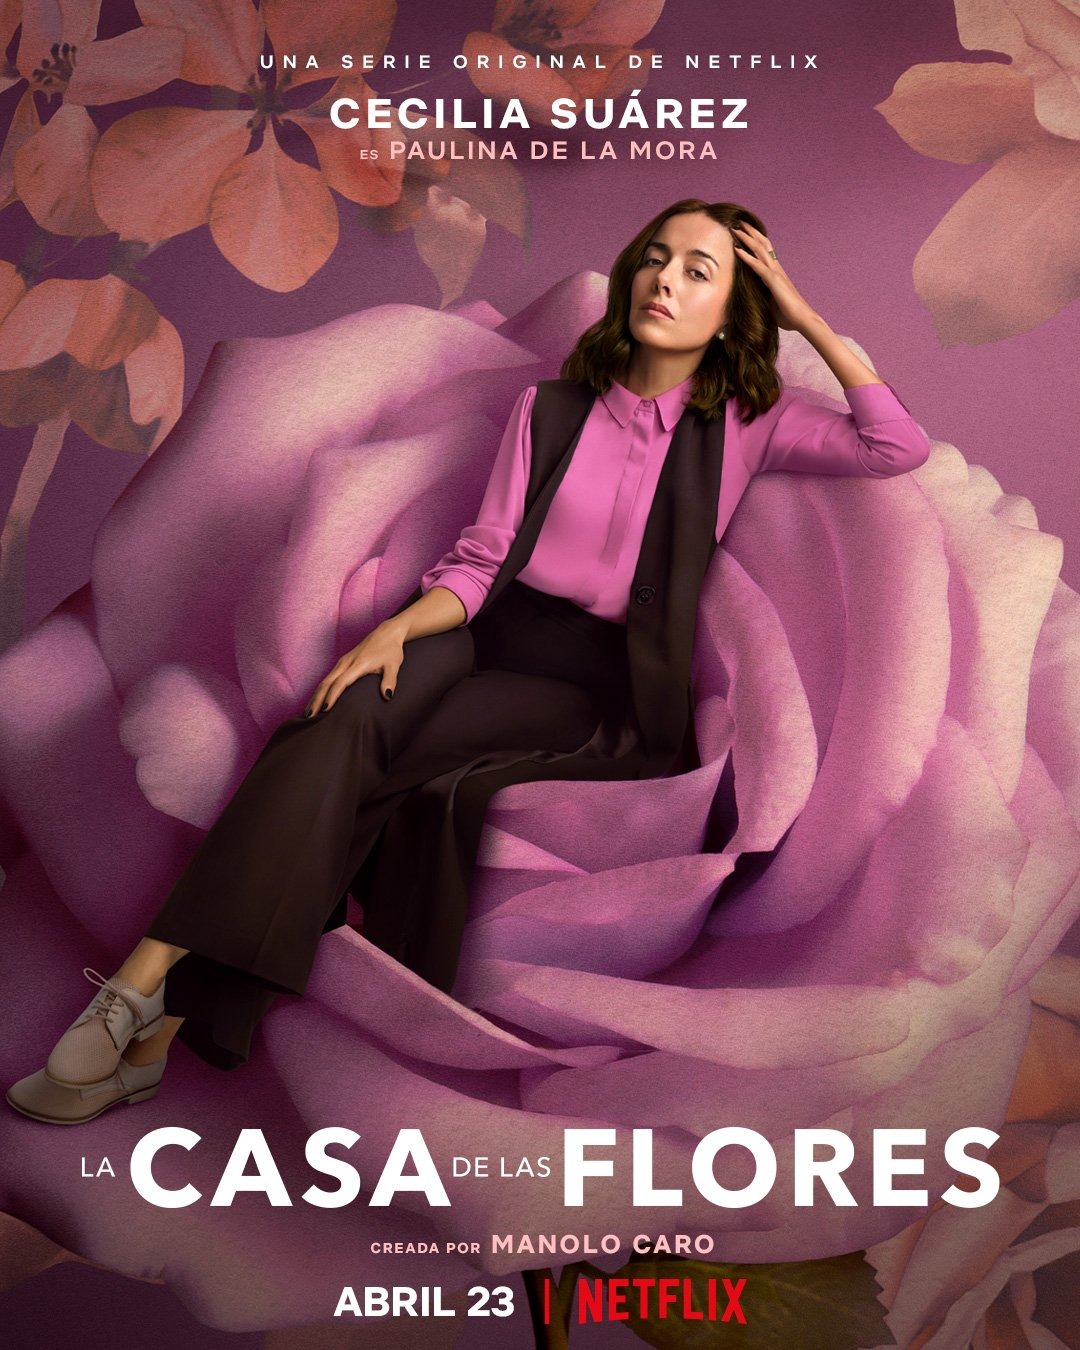 Extra Large TV Poster Image for La casa de las flores (#17 of 19)